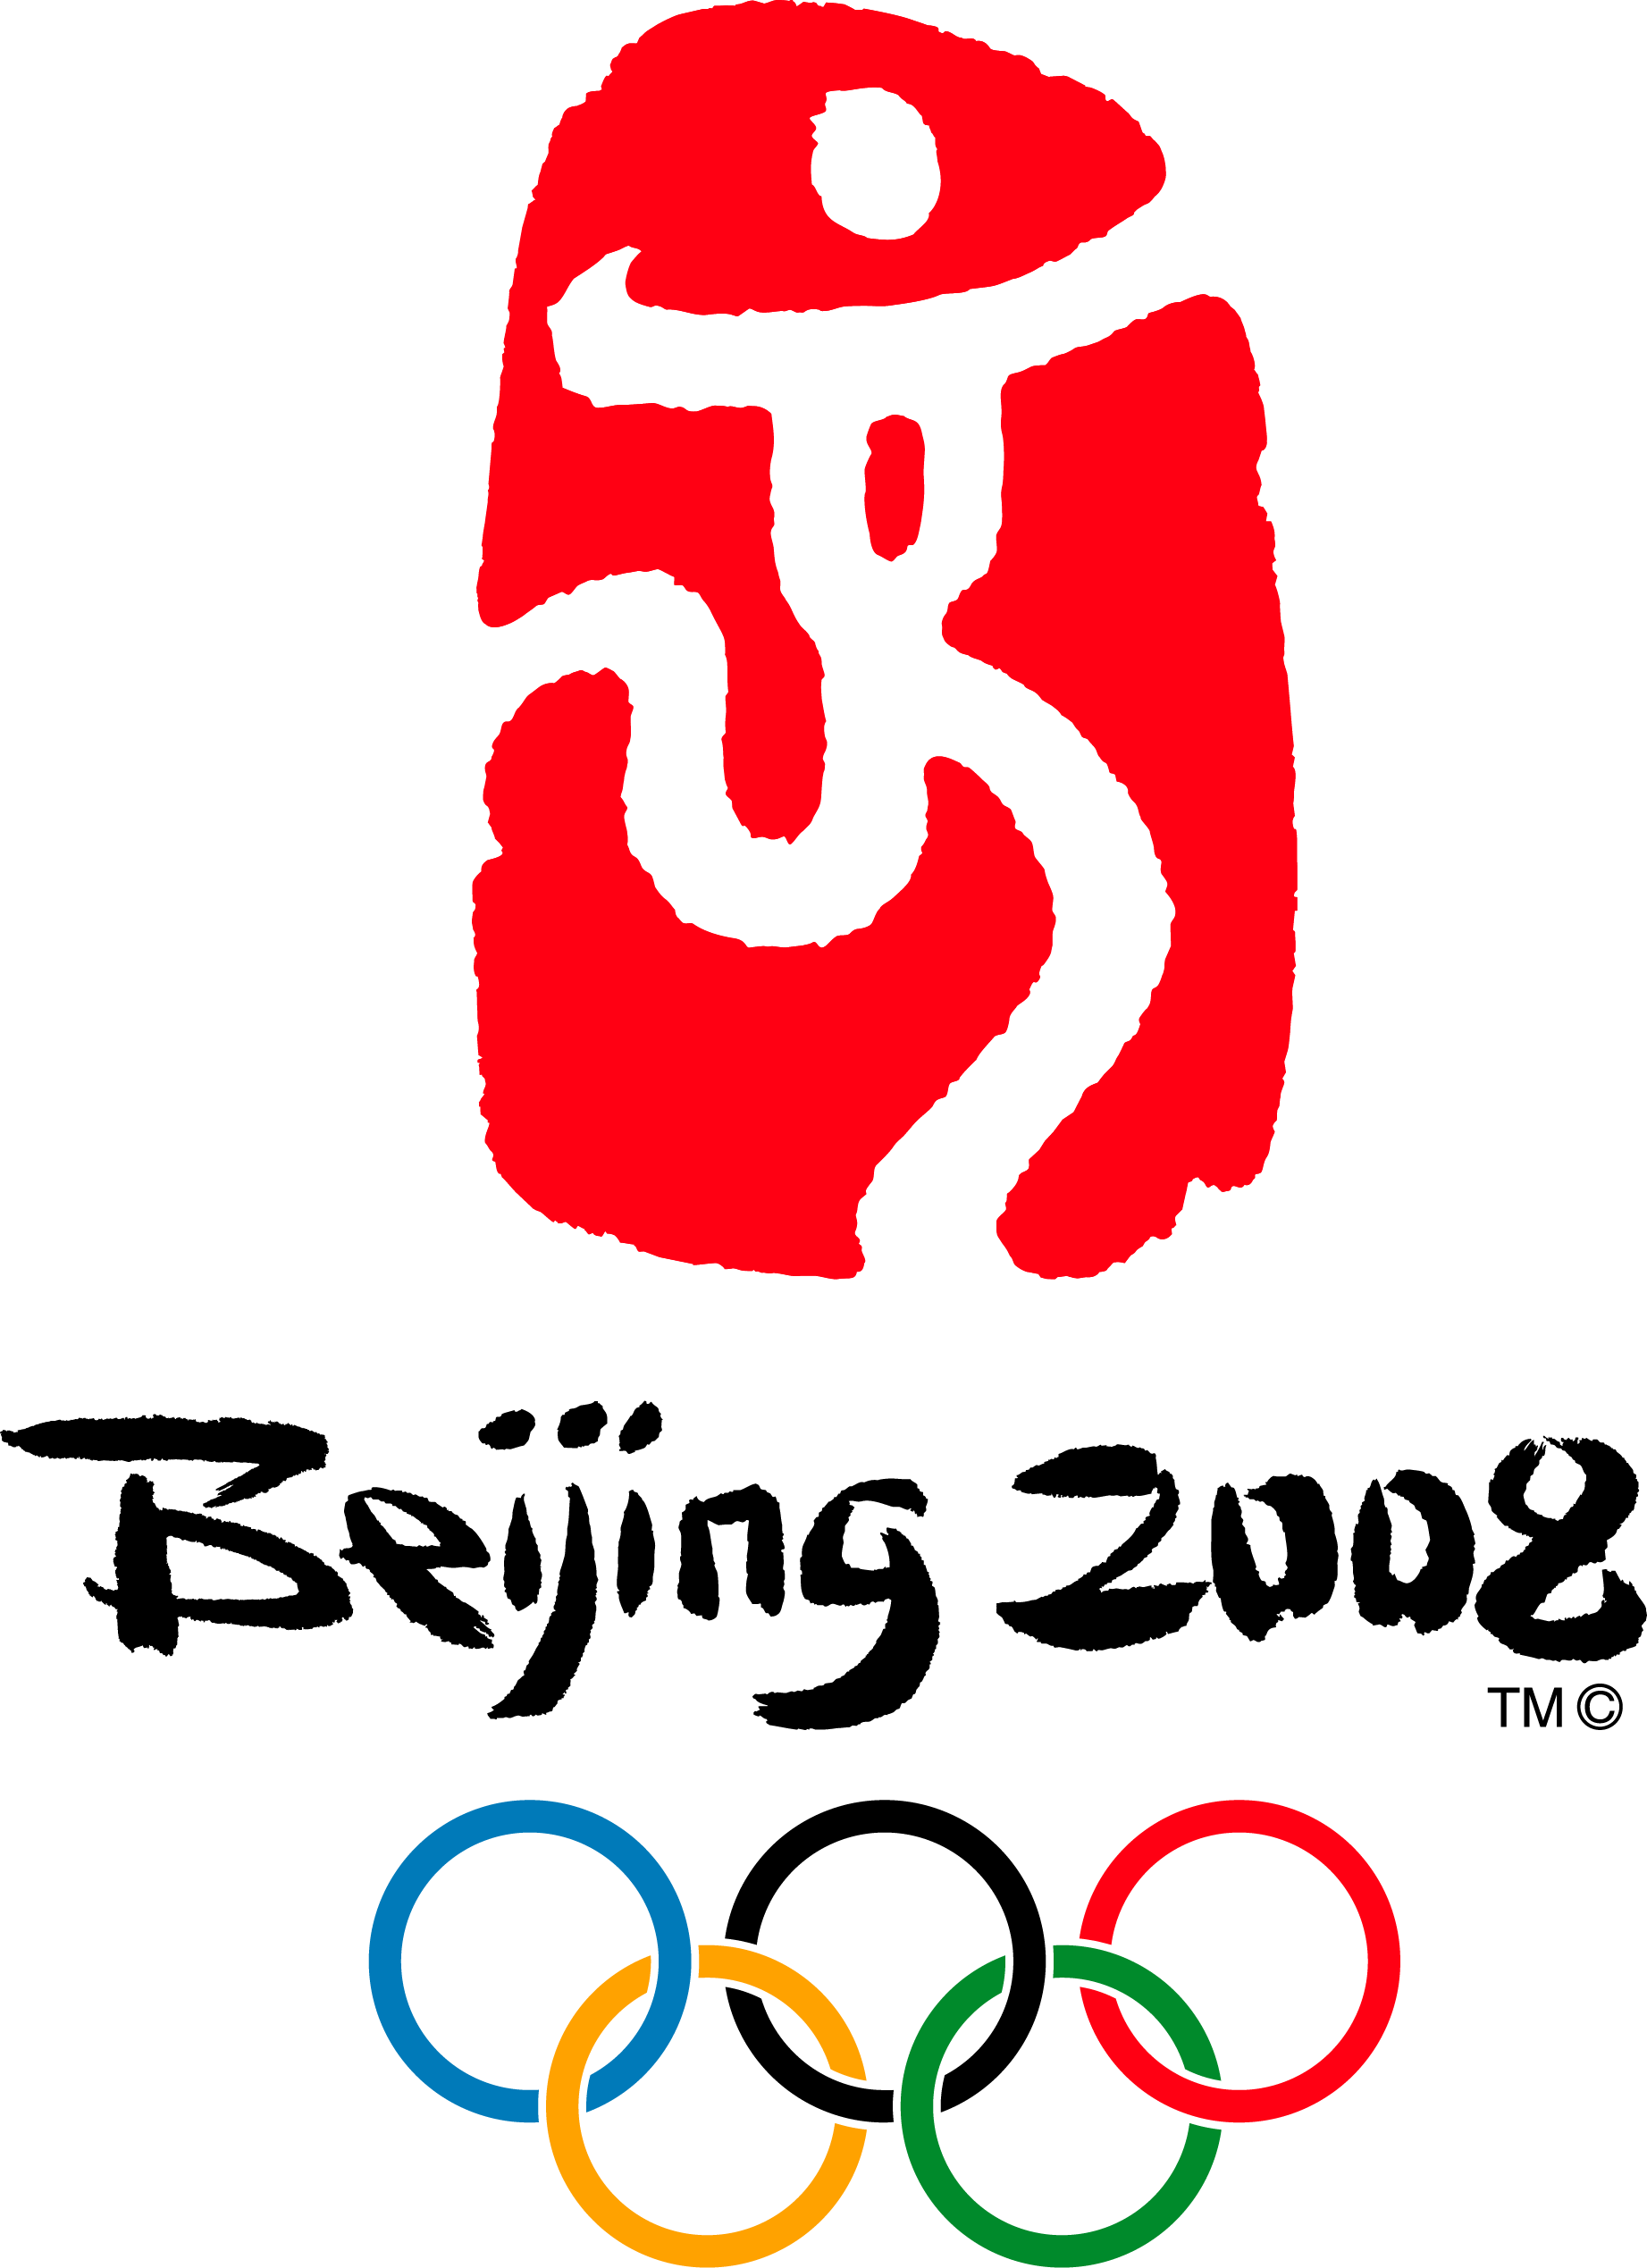 奥运会图标进行动效创作首先我们先来看看北京奥运会的体育图标原设计